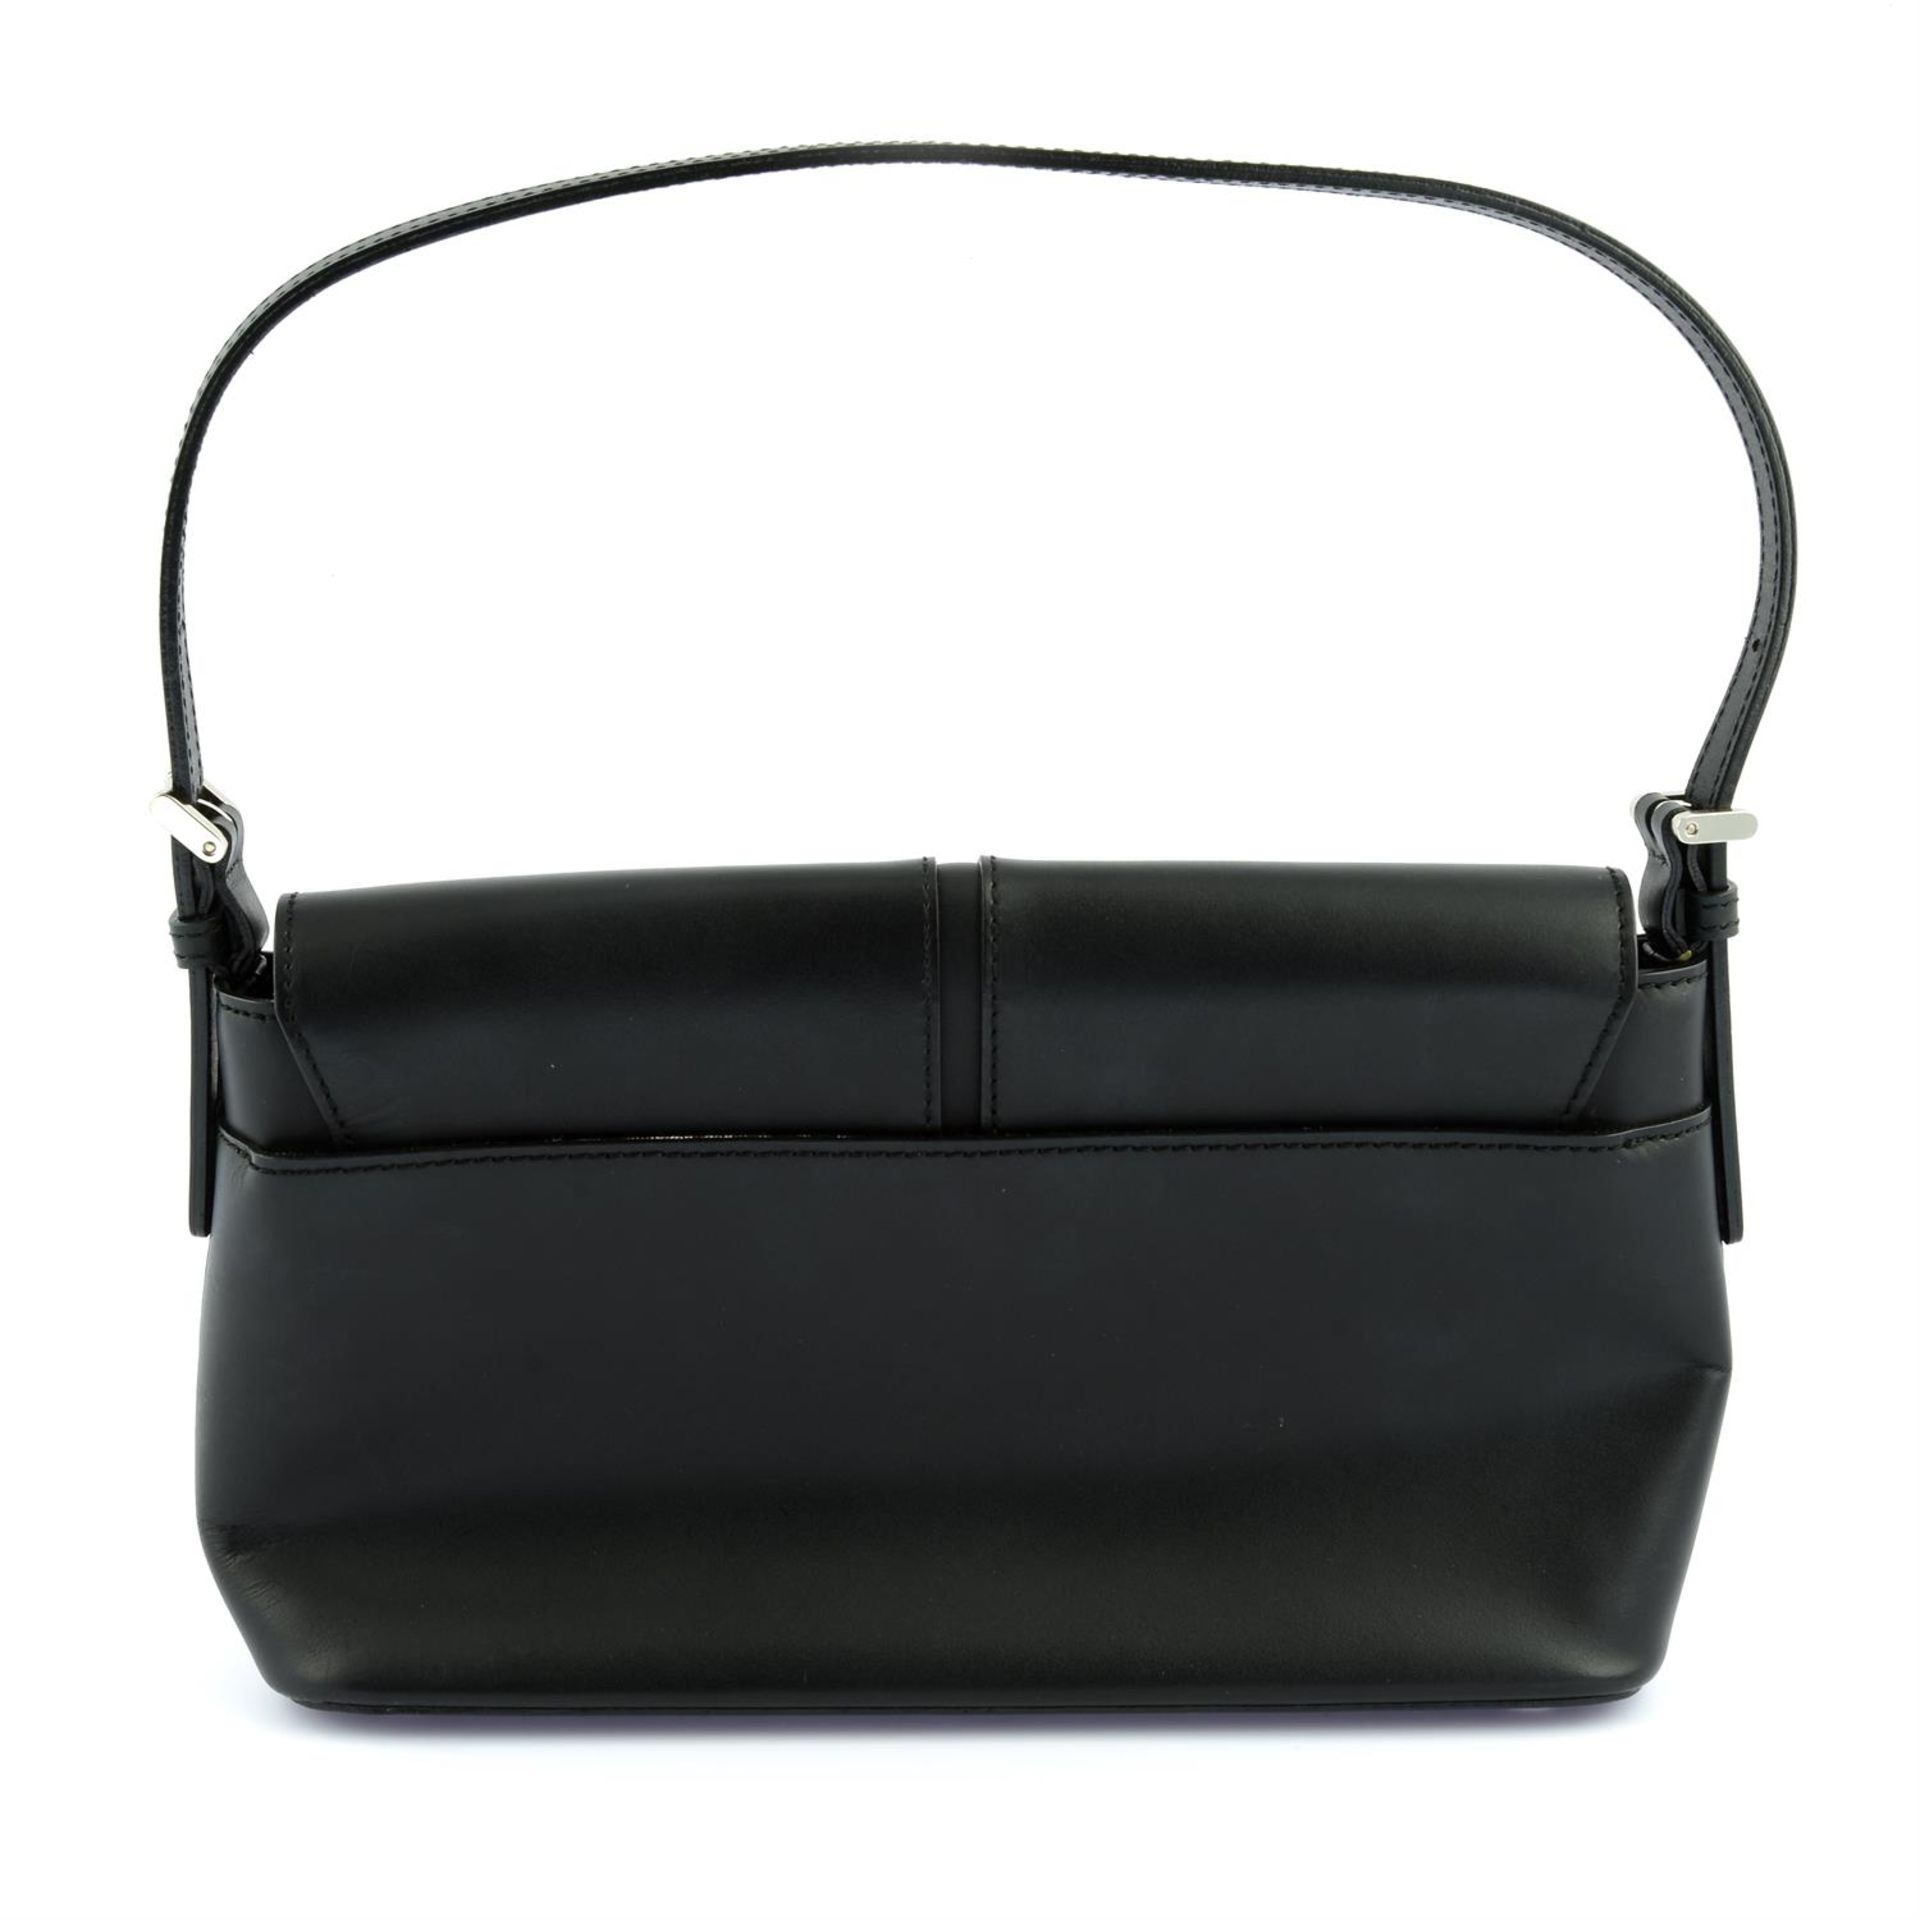 BURBERRY - a black leather rectangular shoulder flap bag. - Image 2 of 4